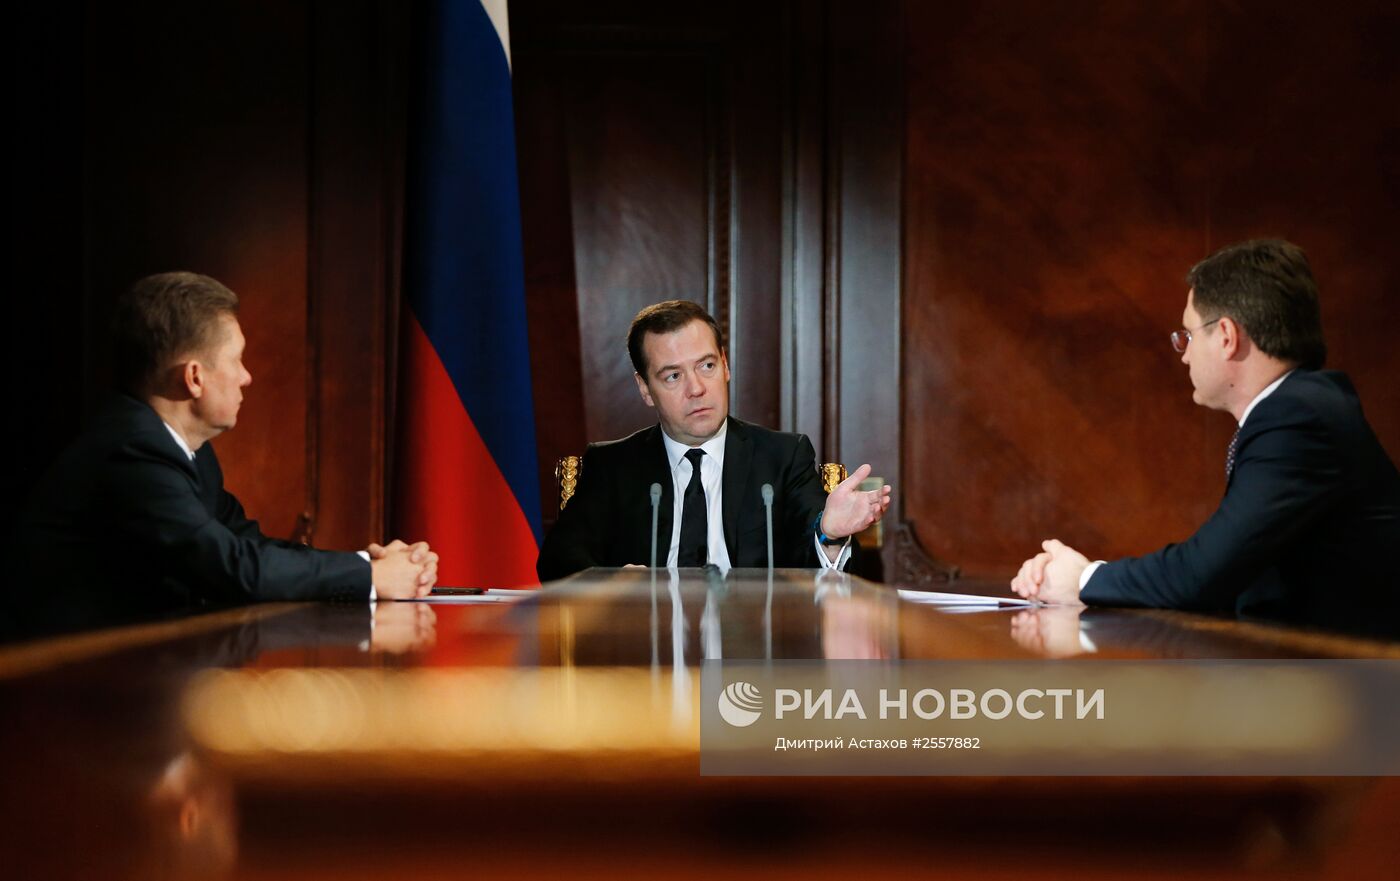 Премьер-министр РФ Д.Медведев провел встречу с главой "Газпрома" А.Миллером и министром энергетики А.Новаком